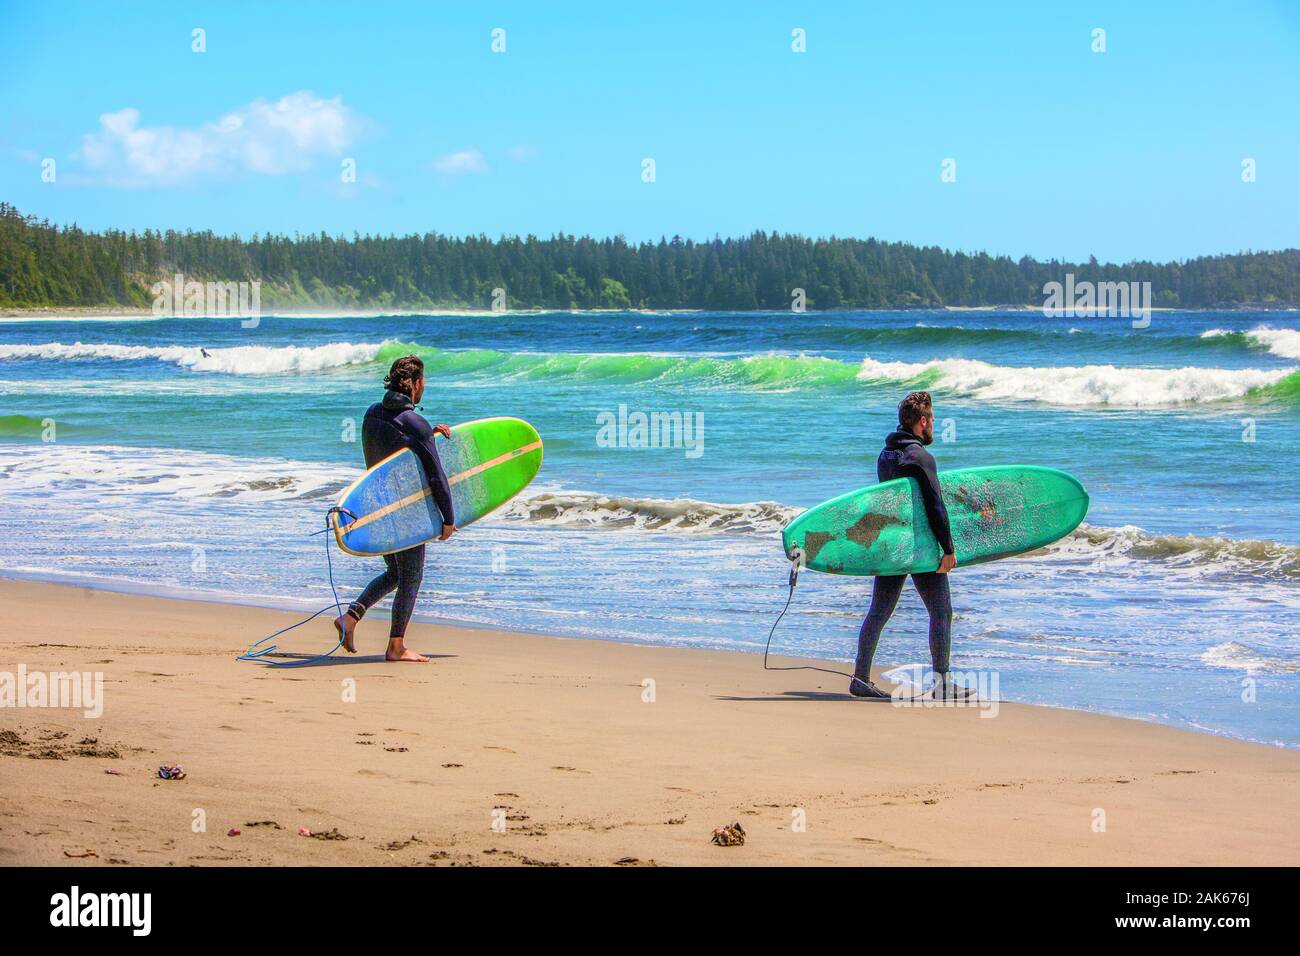 British Columbia / Vancouver Island: Surfer an der Florencia Bay, Kanada Westen | Verwendung weltweit Stockfoto